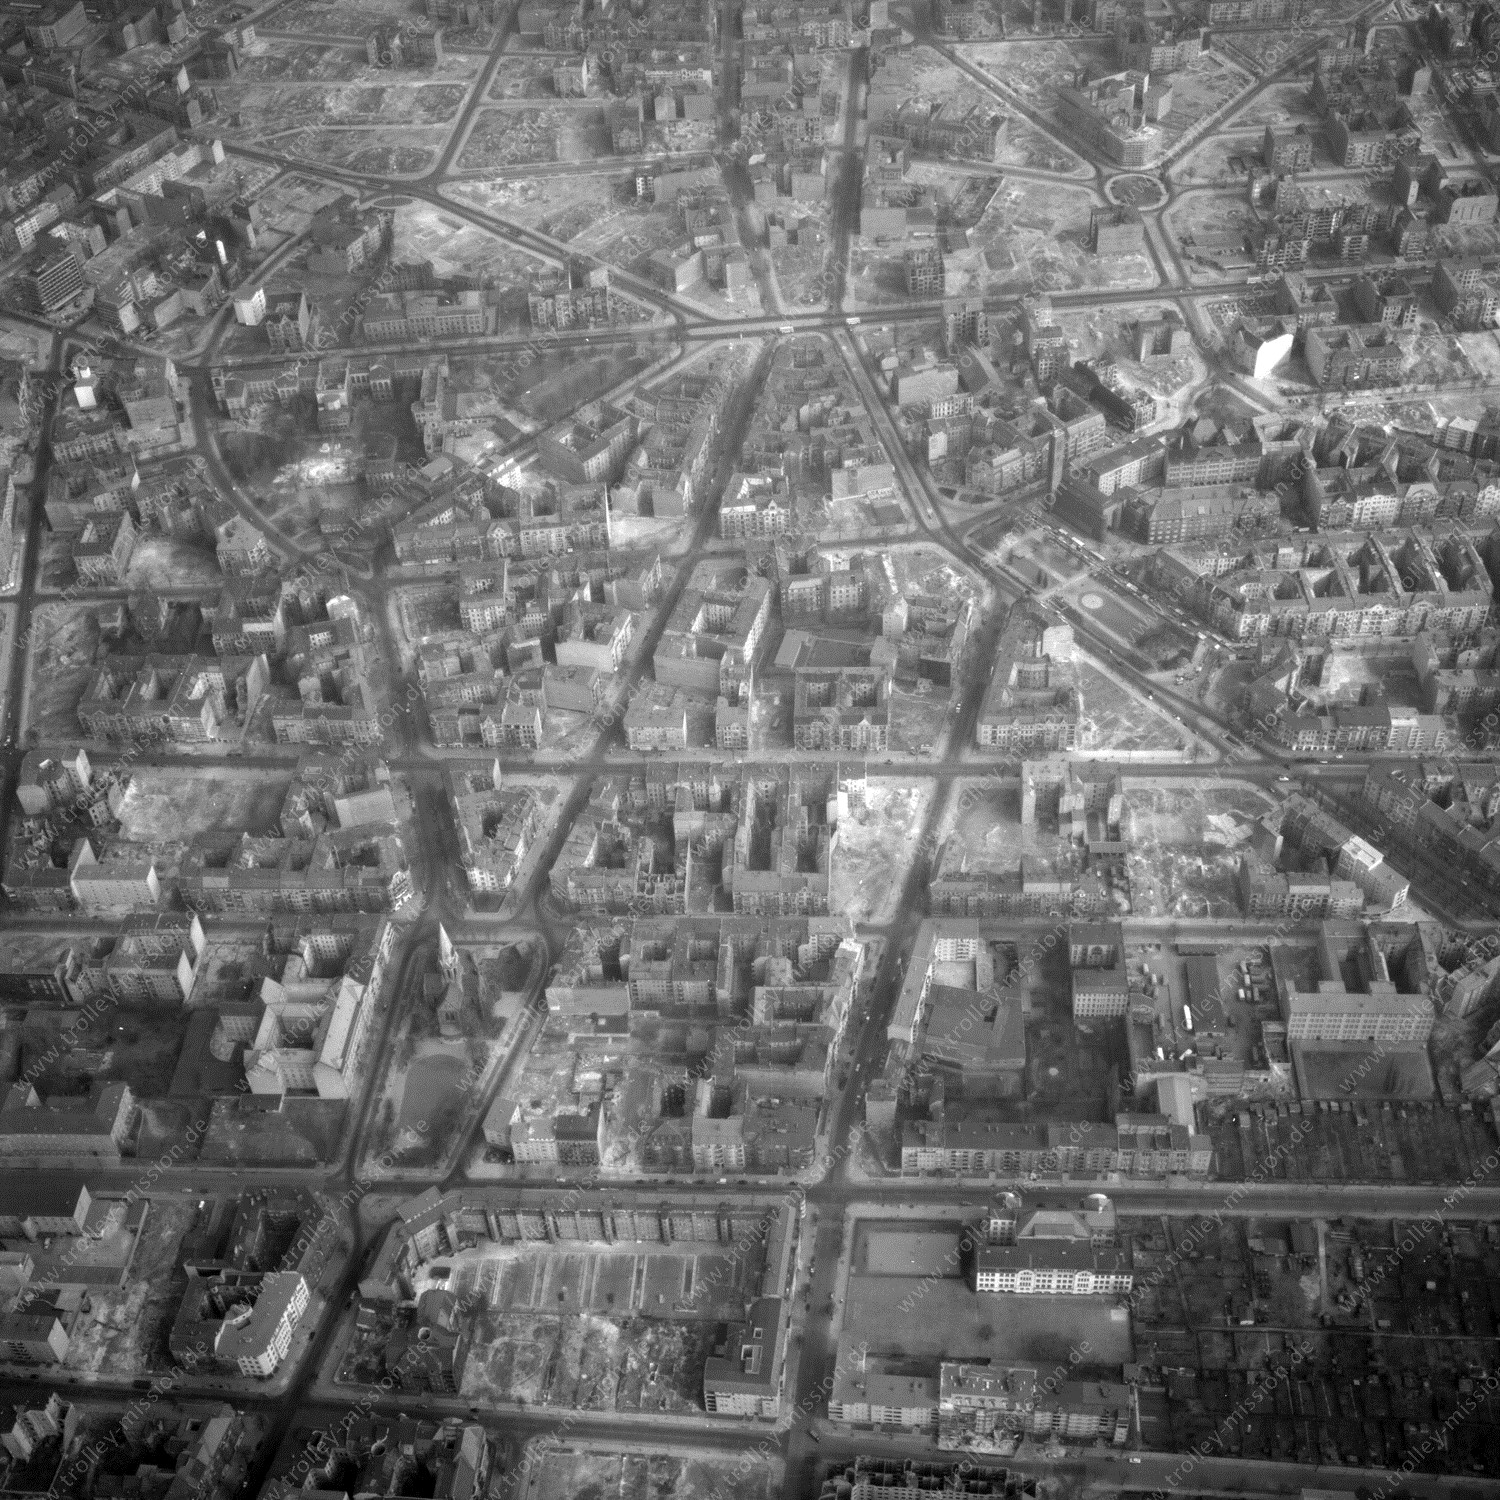 Alte Fotos und Luftbilder von Berlin - Luftbildaufnahme Nr. 08 - Historische Luftaufnahmen von West-Berlin aus dem Jahr 1954 - Flugstrecke Delta